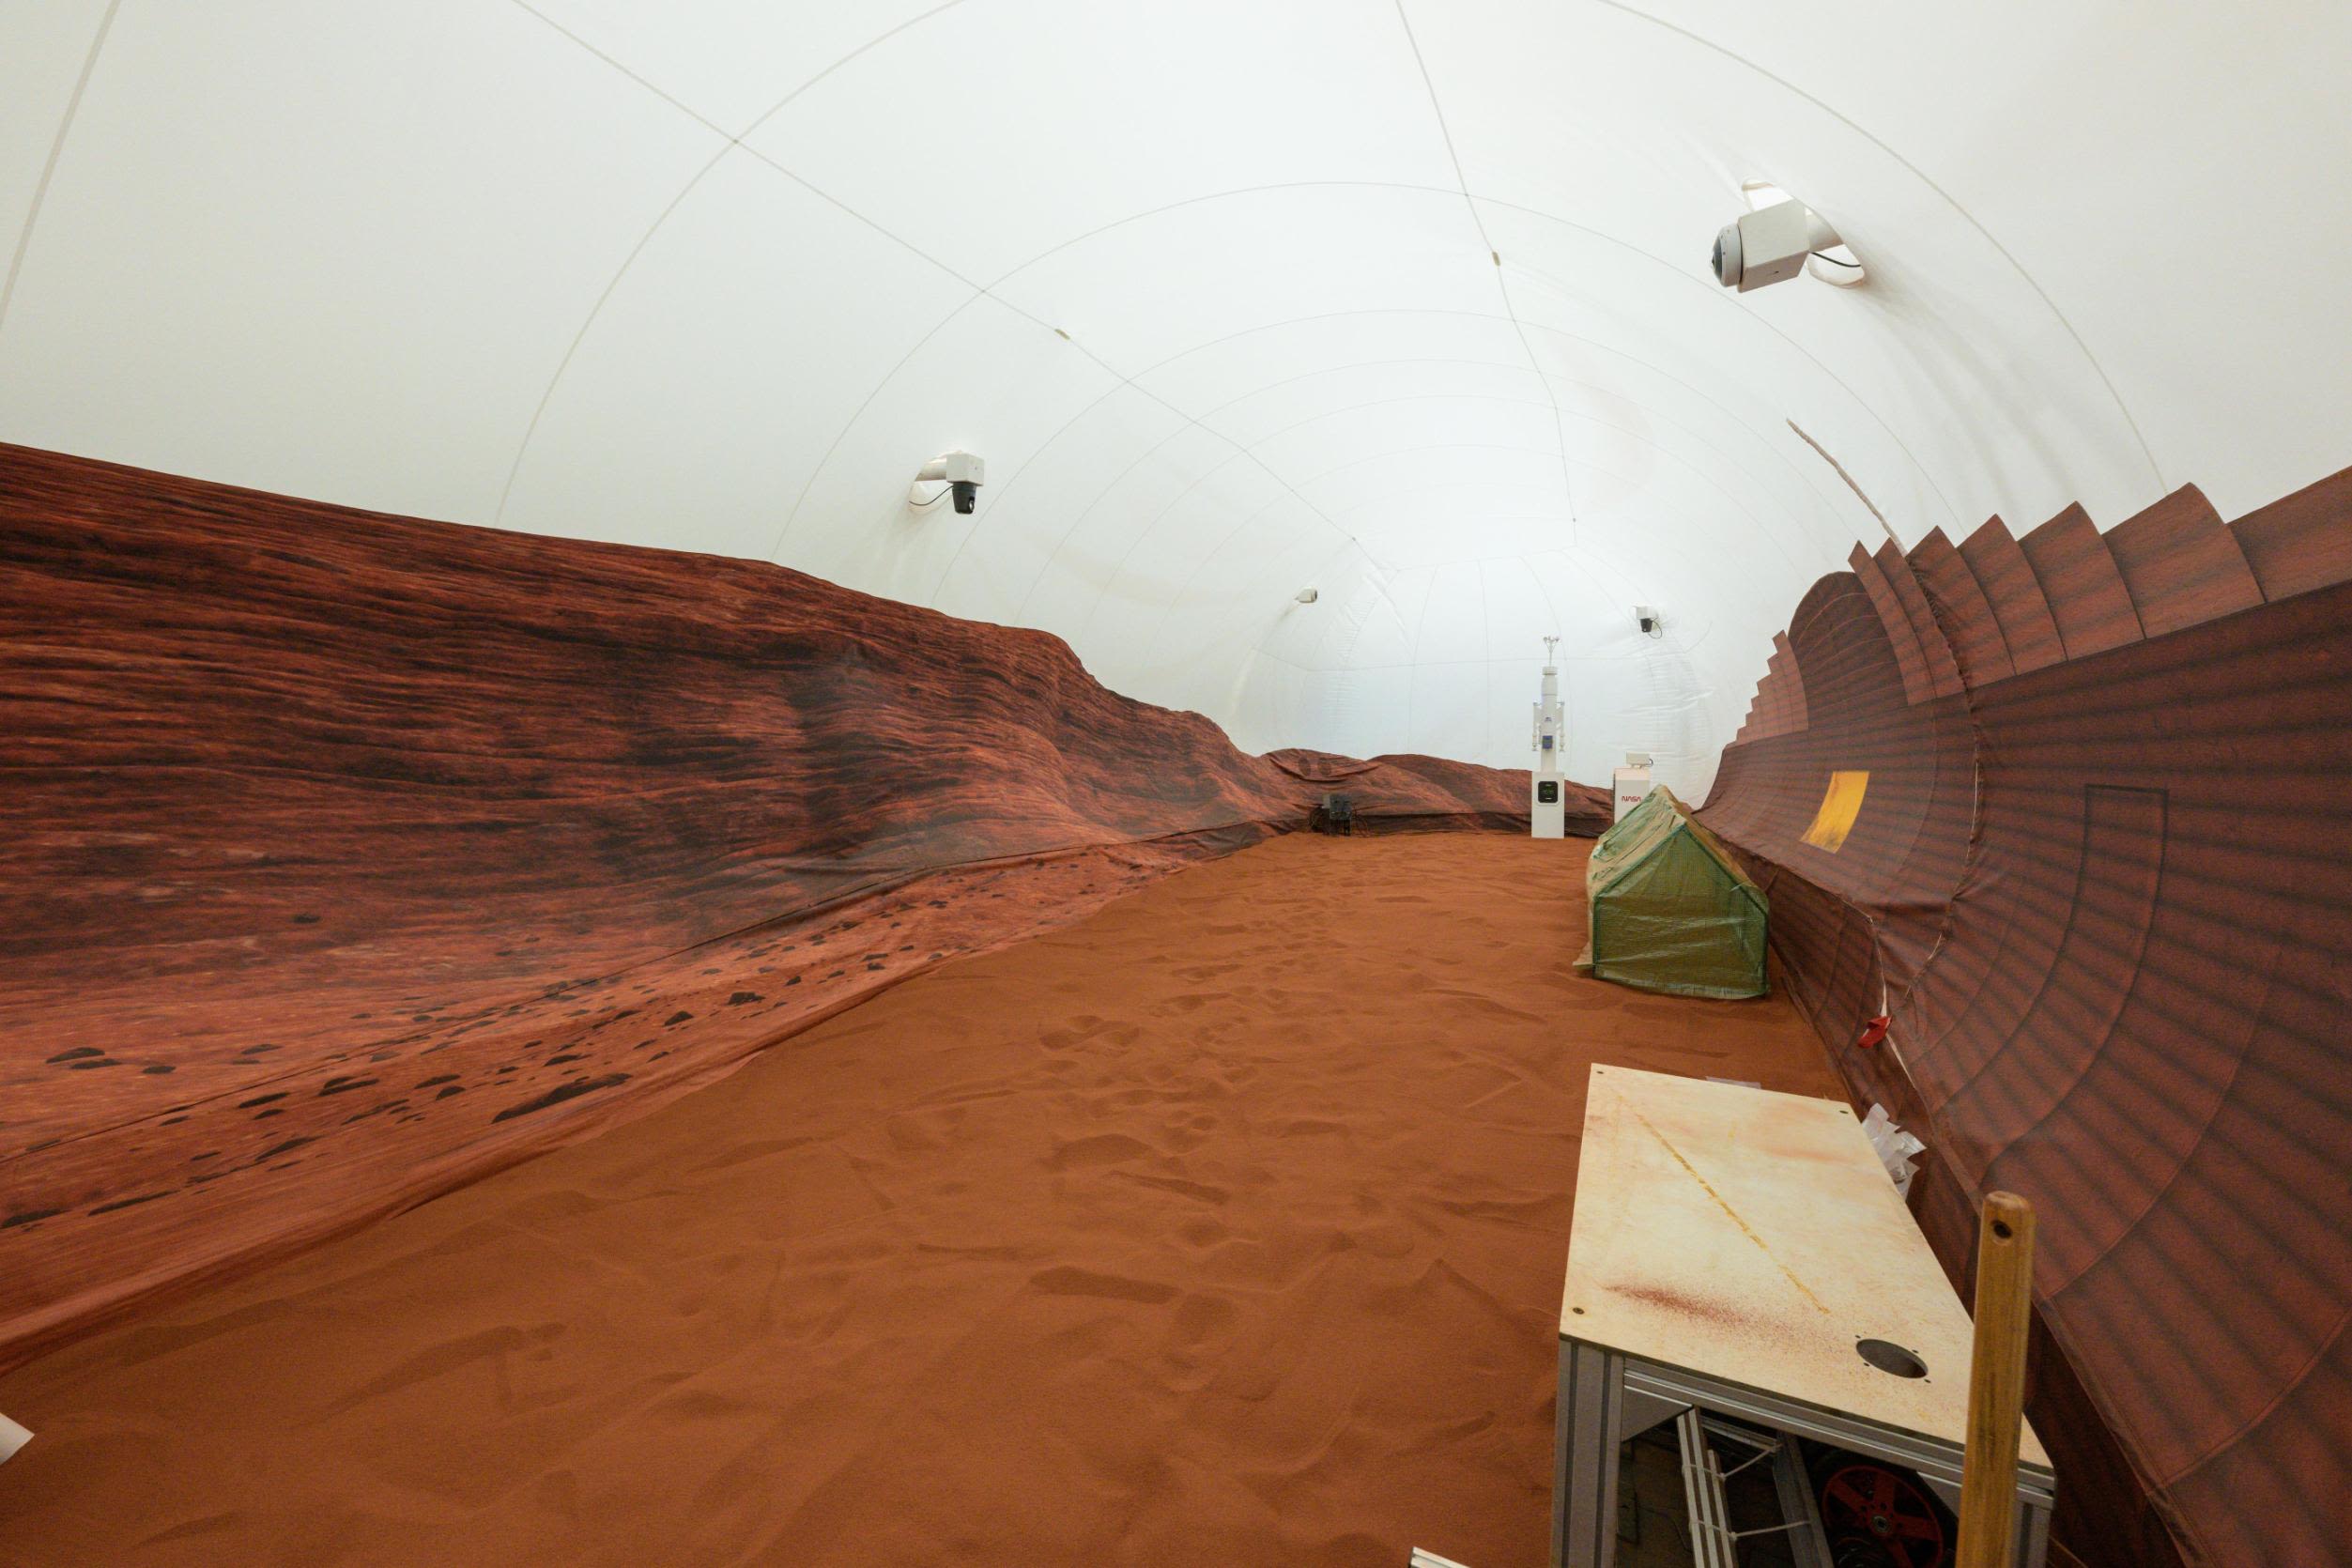 Teams Design 3D Printed Habitats for Mars